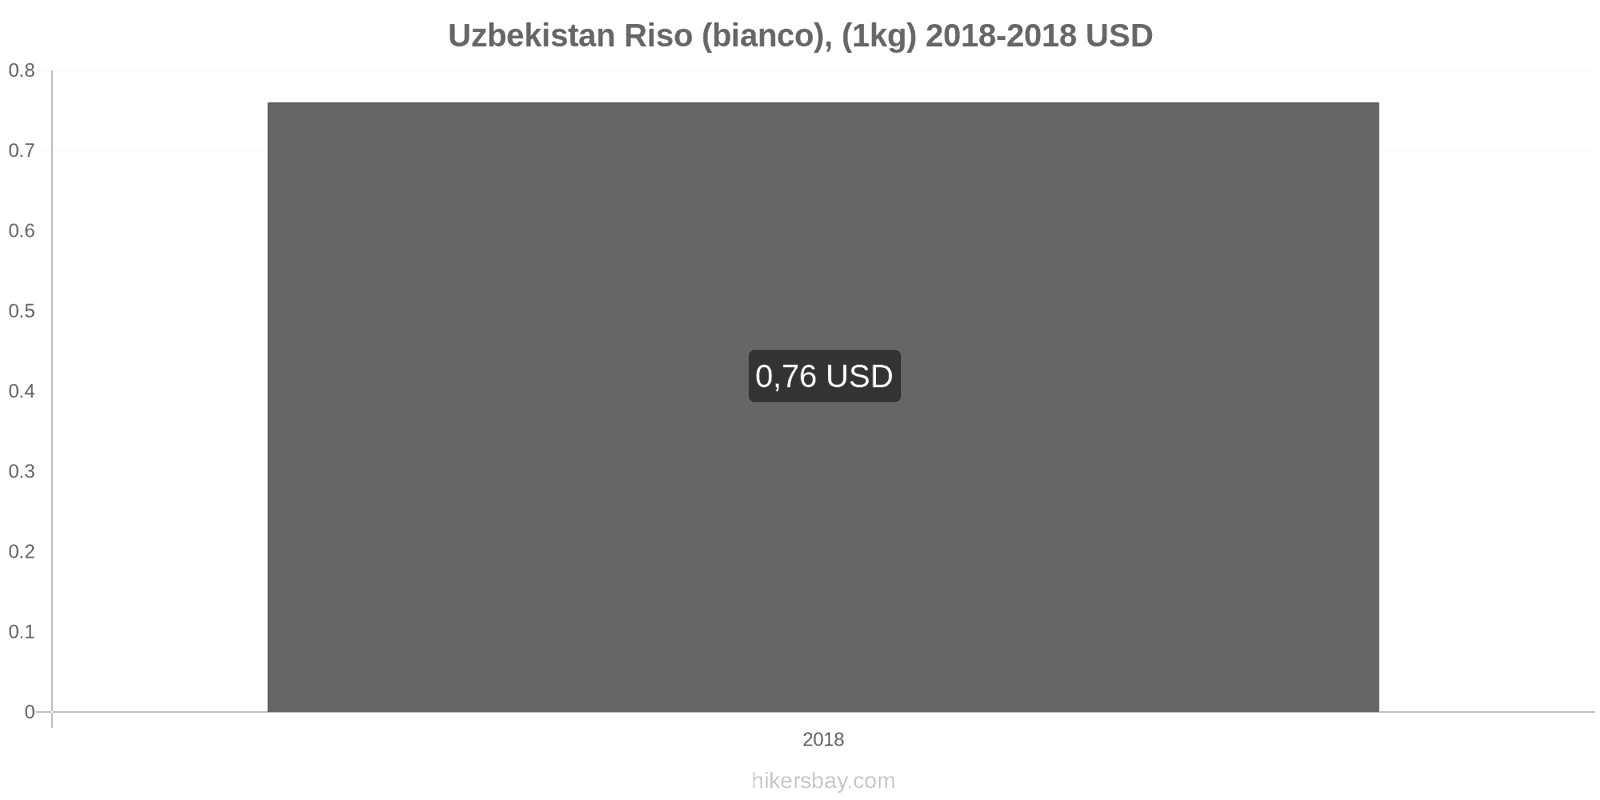 Uzbekistan cambi di prezzo Chilo di riso bianco hikersbay.com